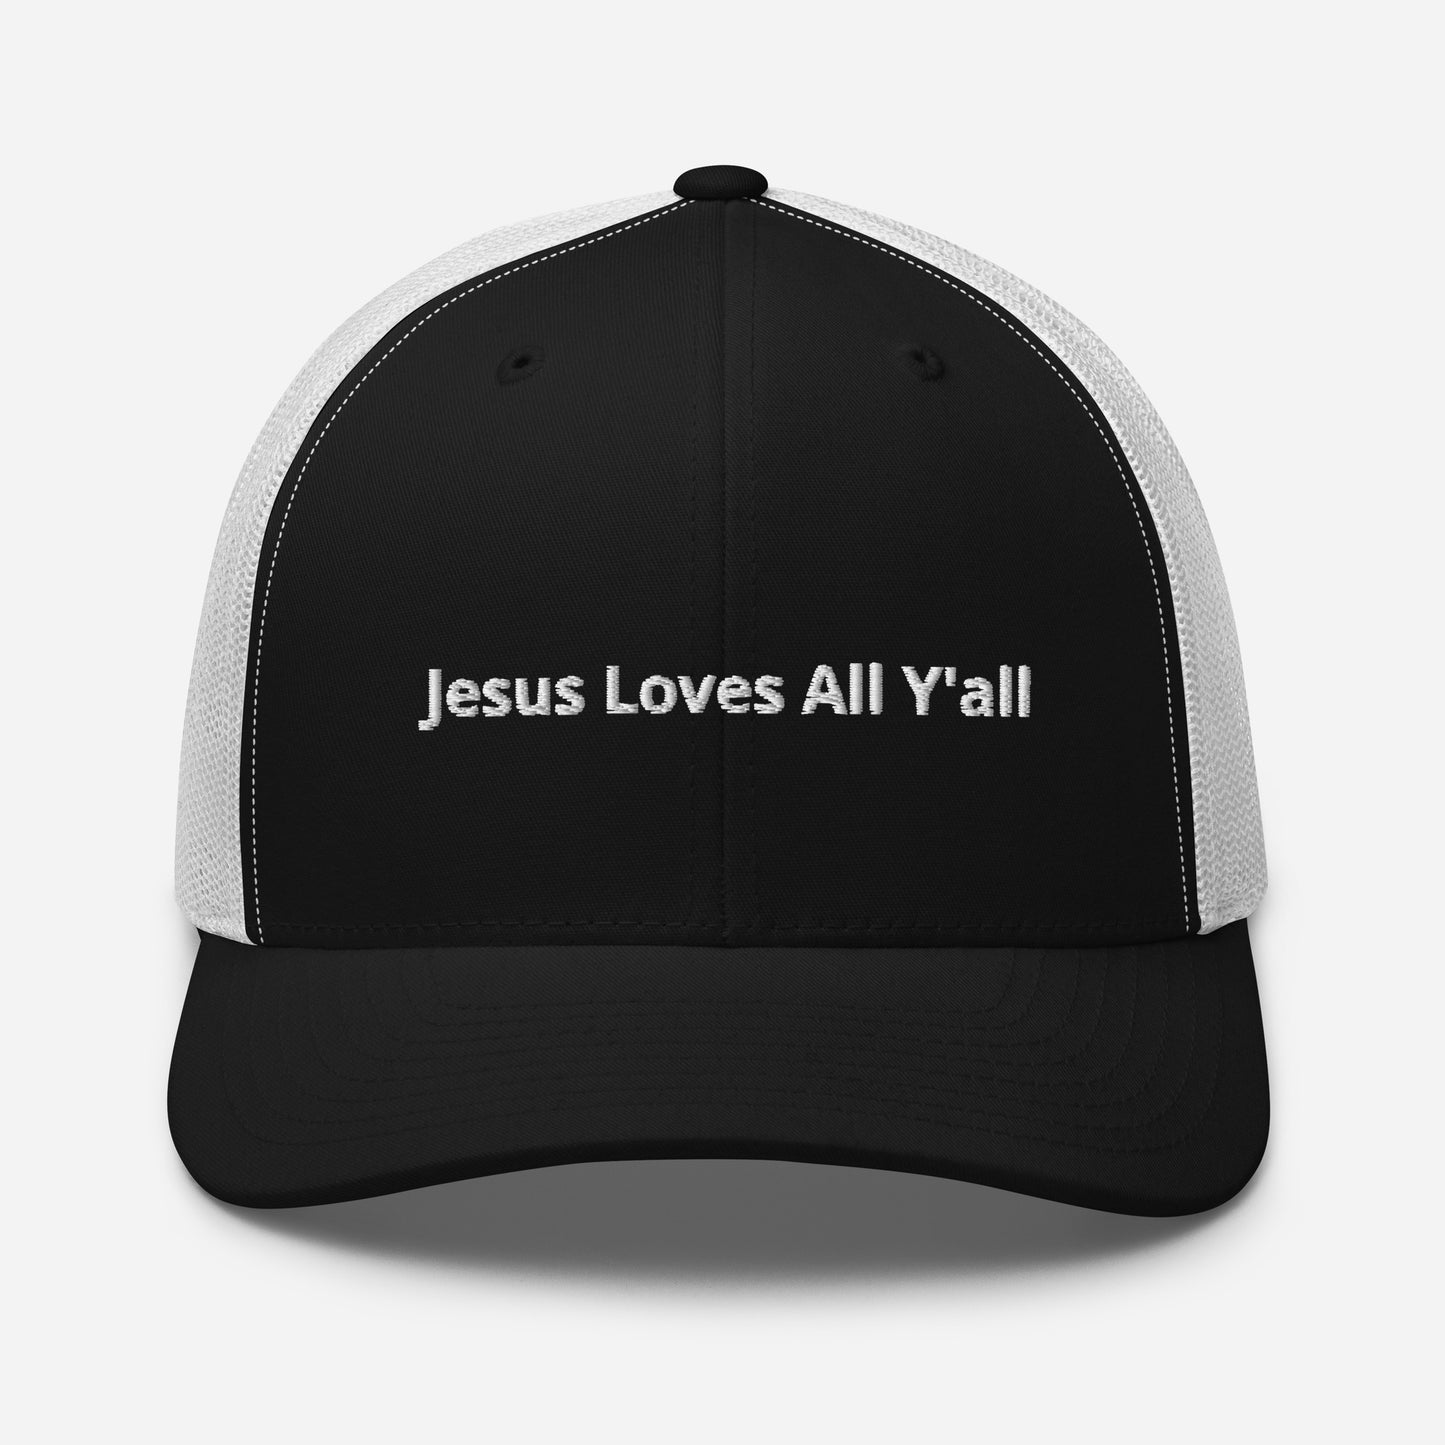 Jesus Loves All Y'all - Trucker Cap